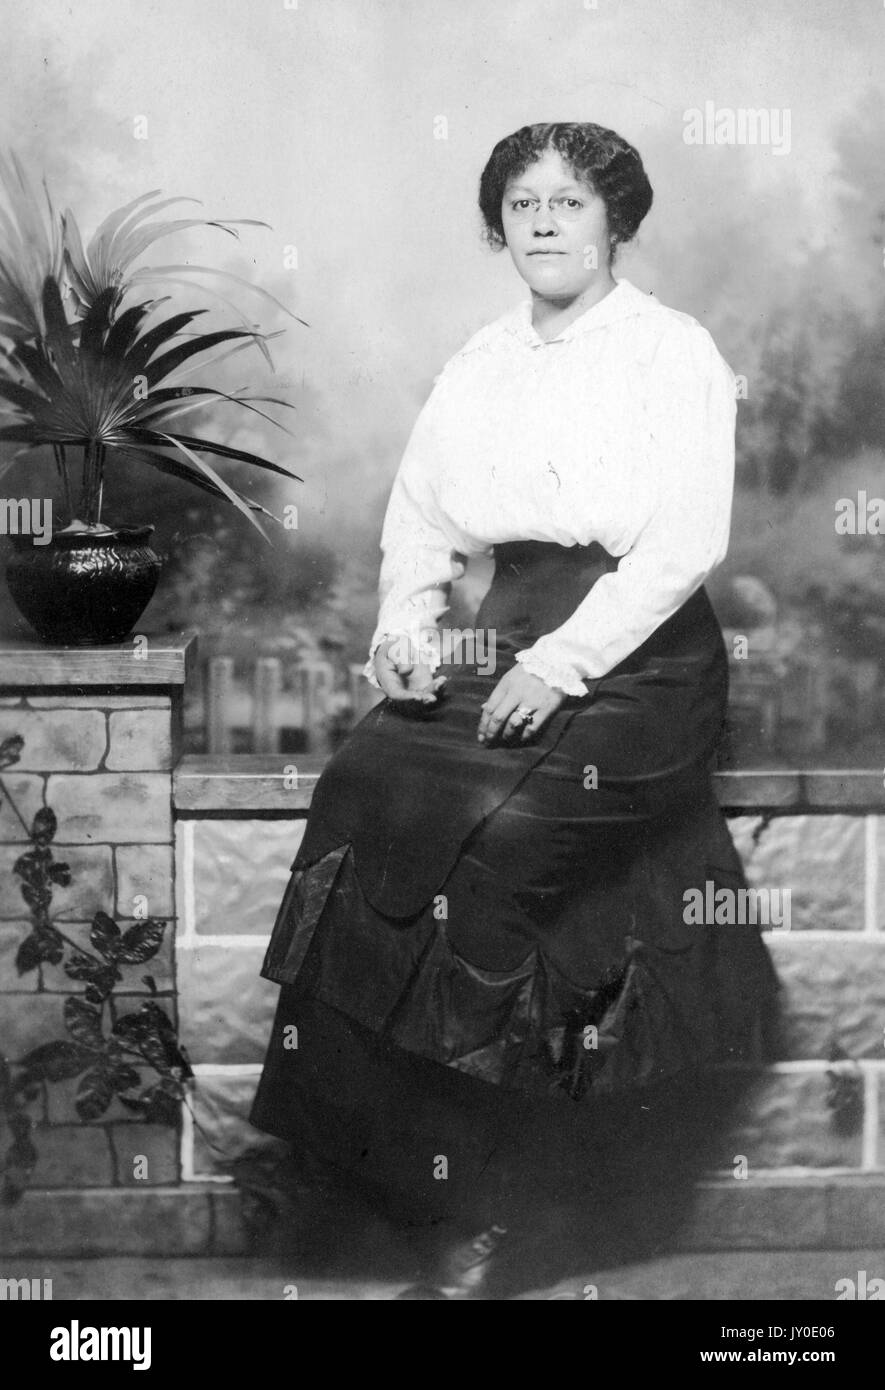 Portrait d'une femme afro-américaine assise devant une murale sur un banc avec un motif de fausse brique, à gauche est un pot avec une plante à l'intérieur, elle porte une jupe longue sombre et un chemisier de couleur claire, elle porte des lunettes et ses mains sont sur ses genoux, 1915. Banque D'Images